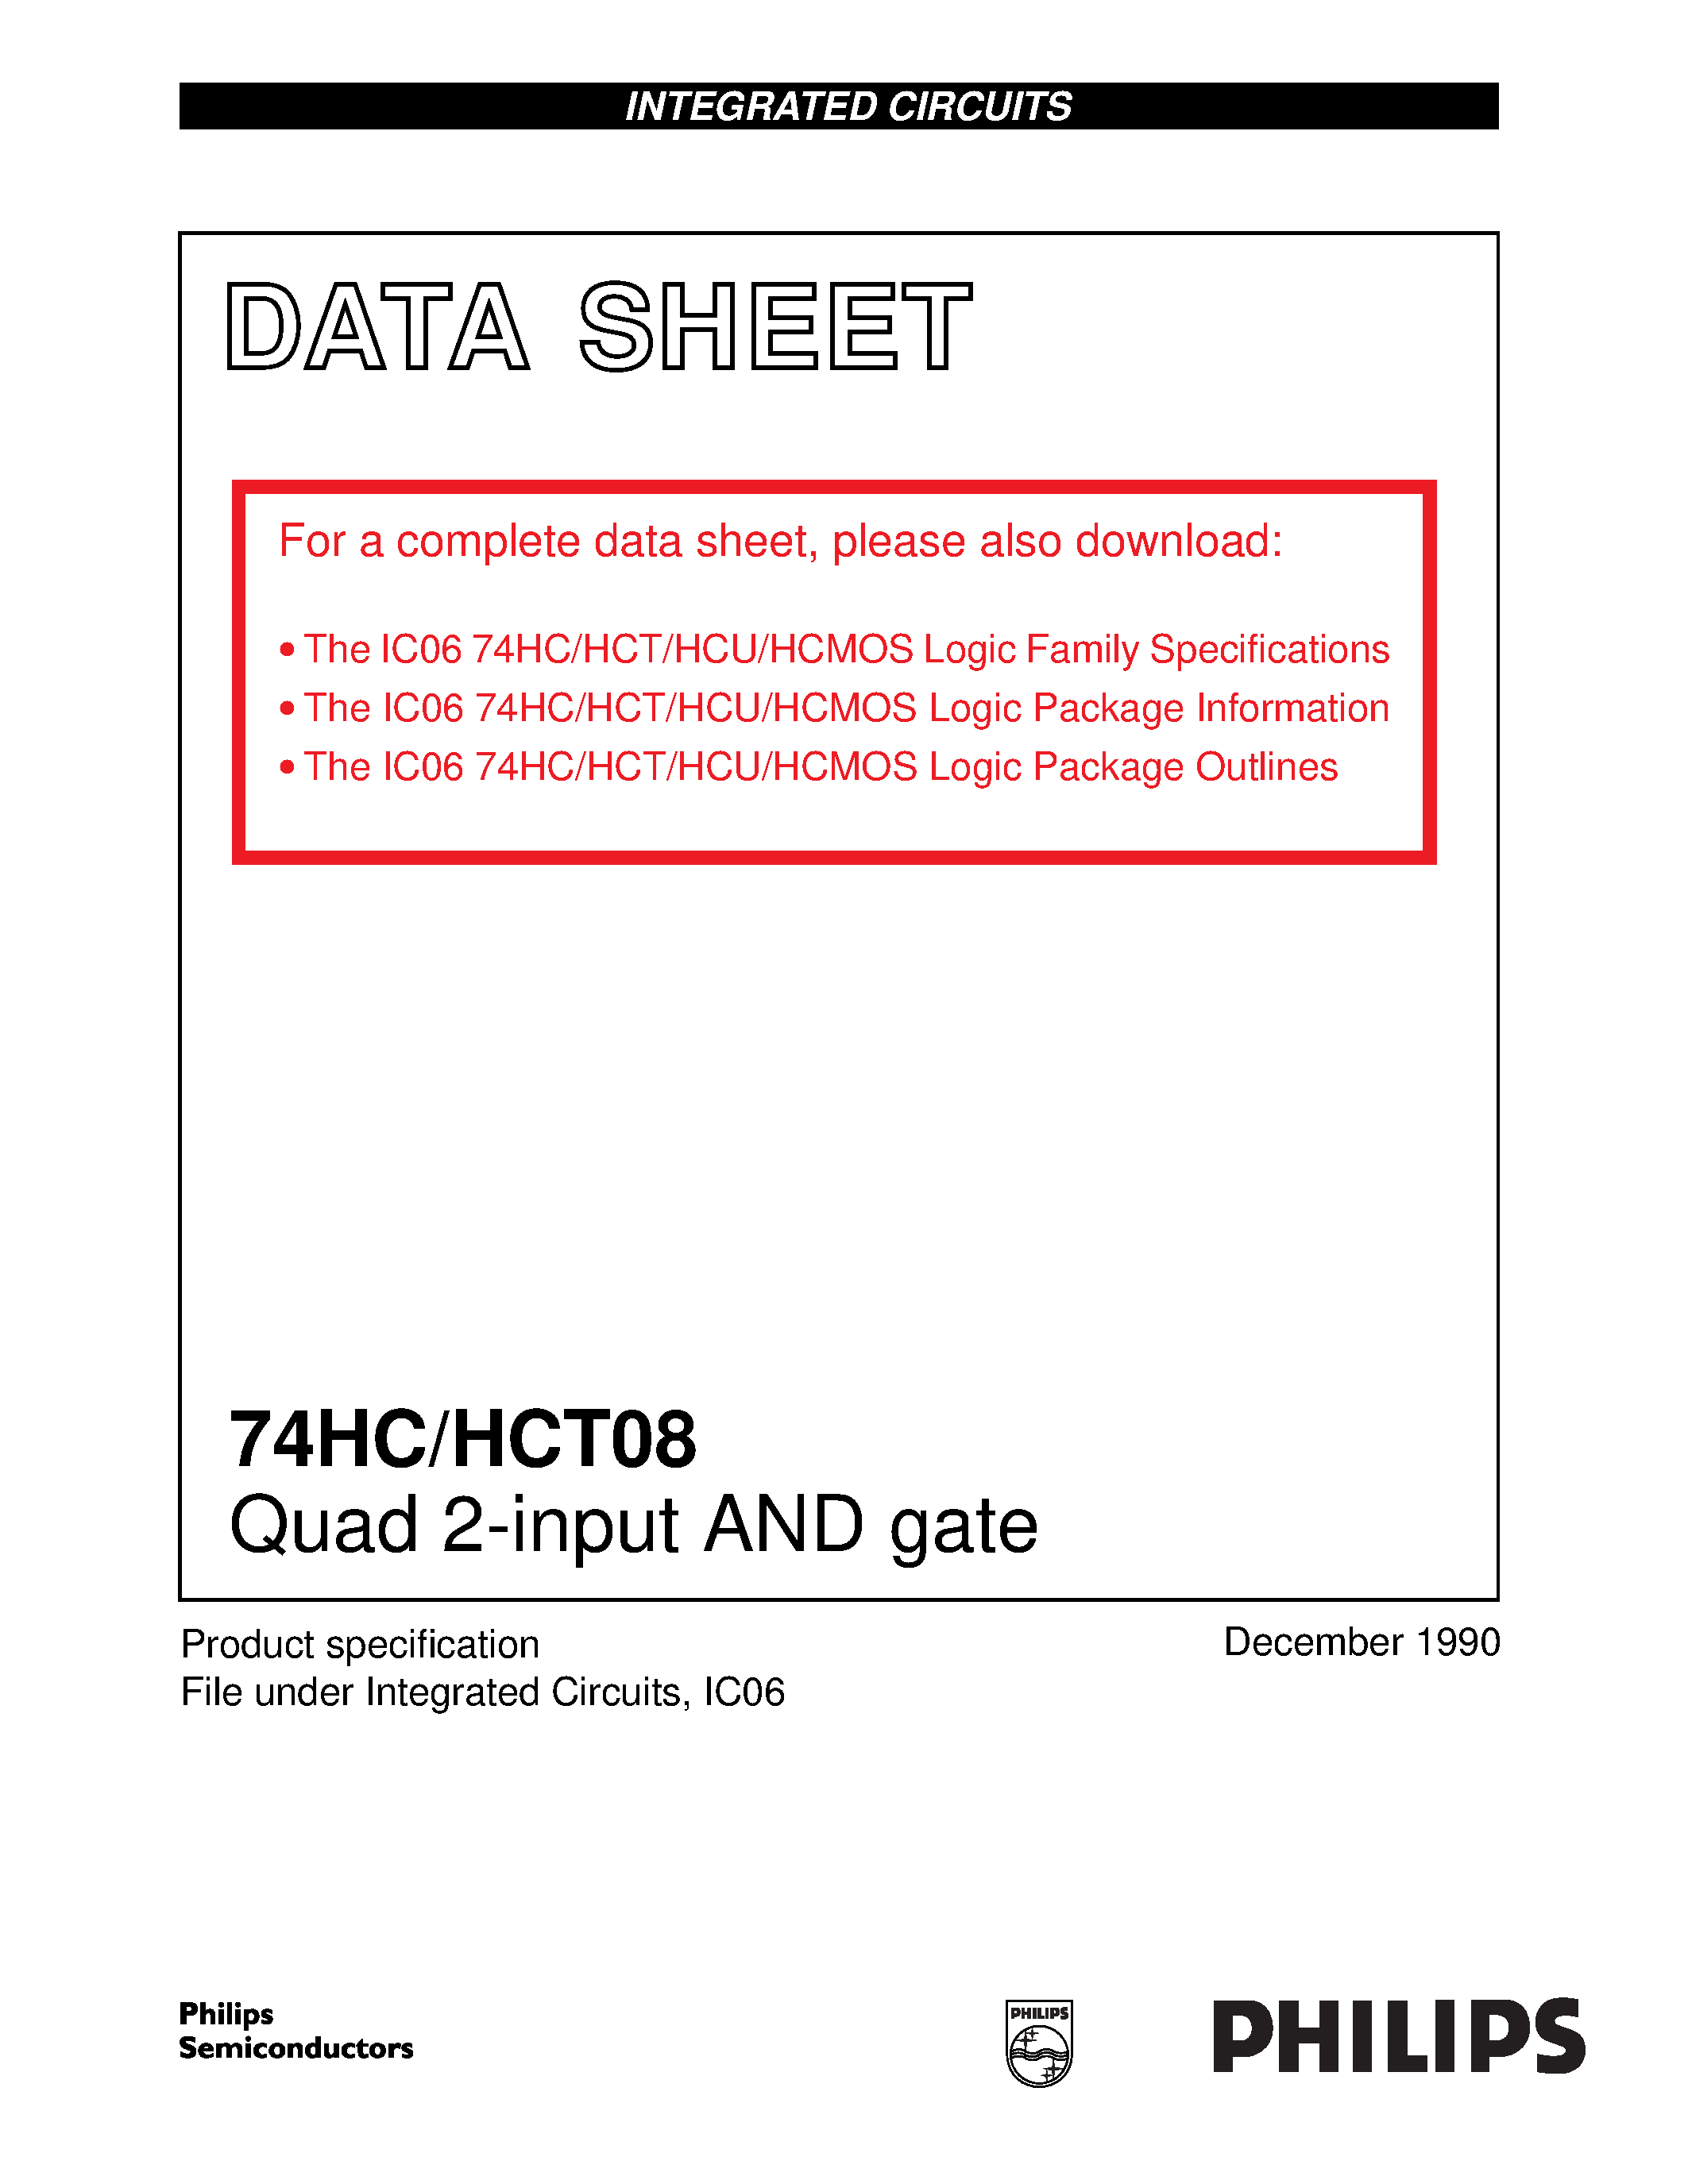 Даташит 74HC08 - Quad 2-input AND gate страница 1